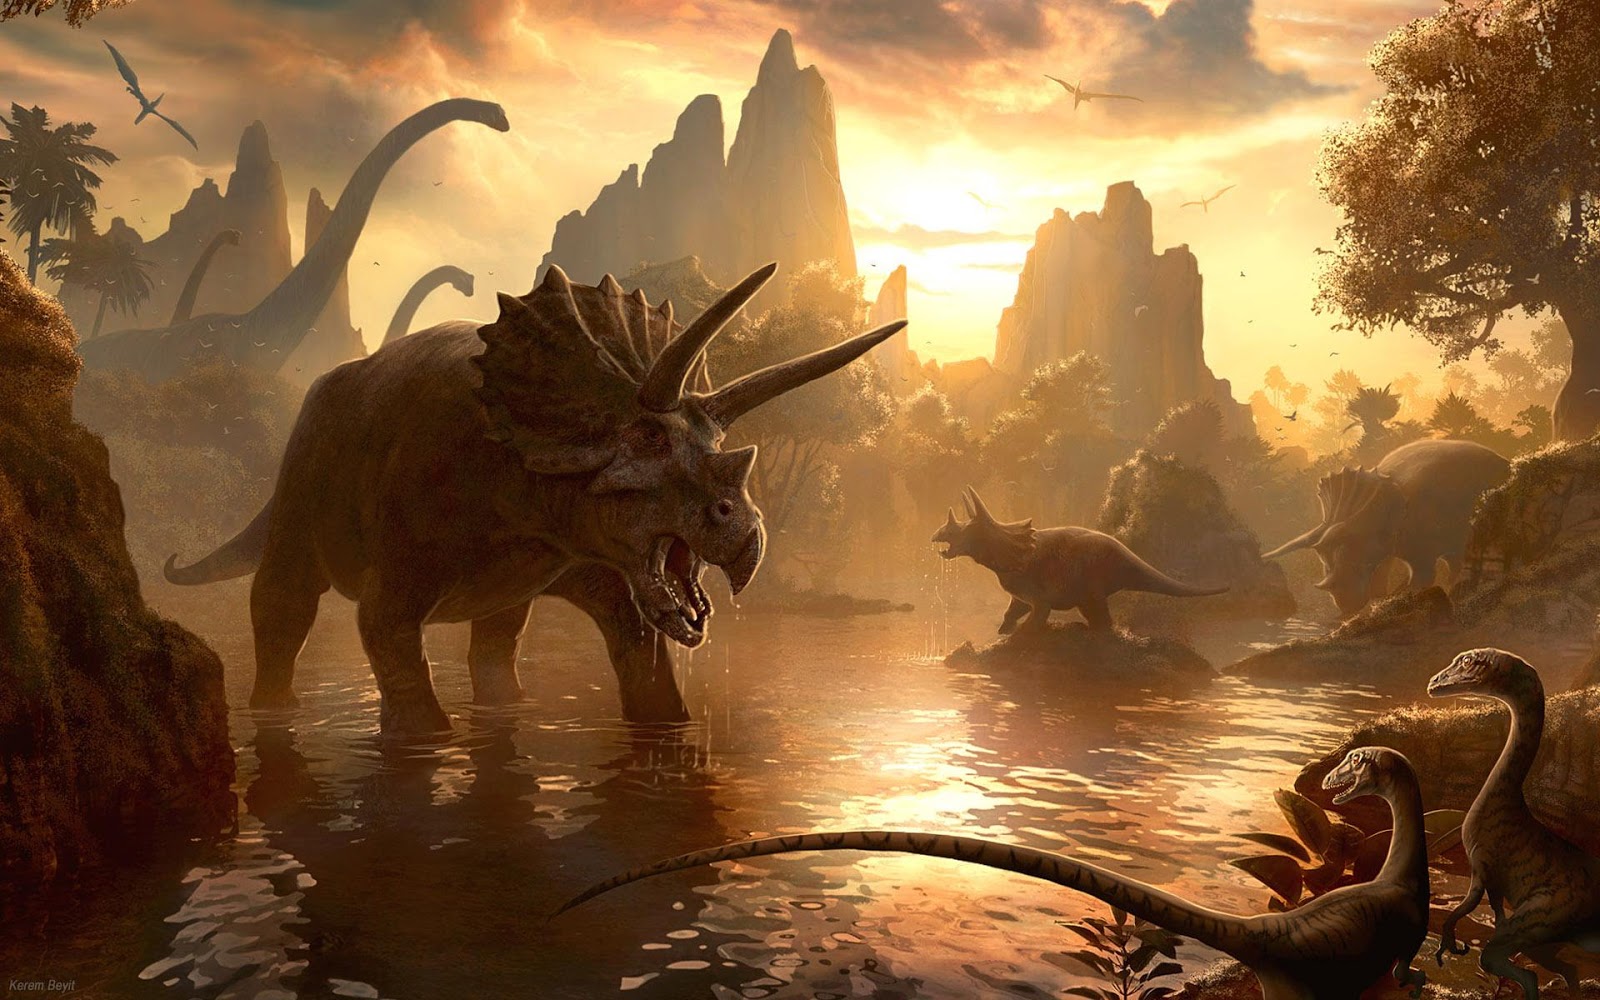  Los 5 mitos sobre los dinosaurios